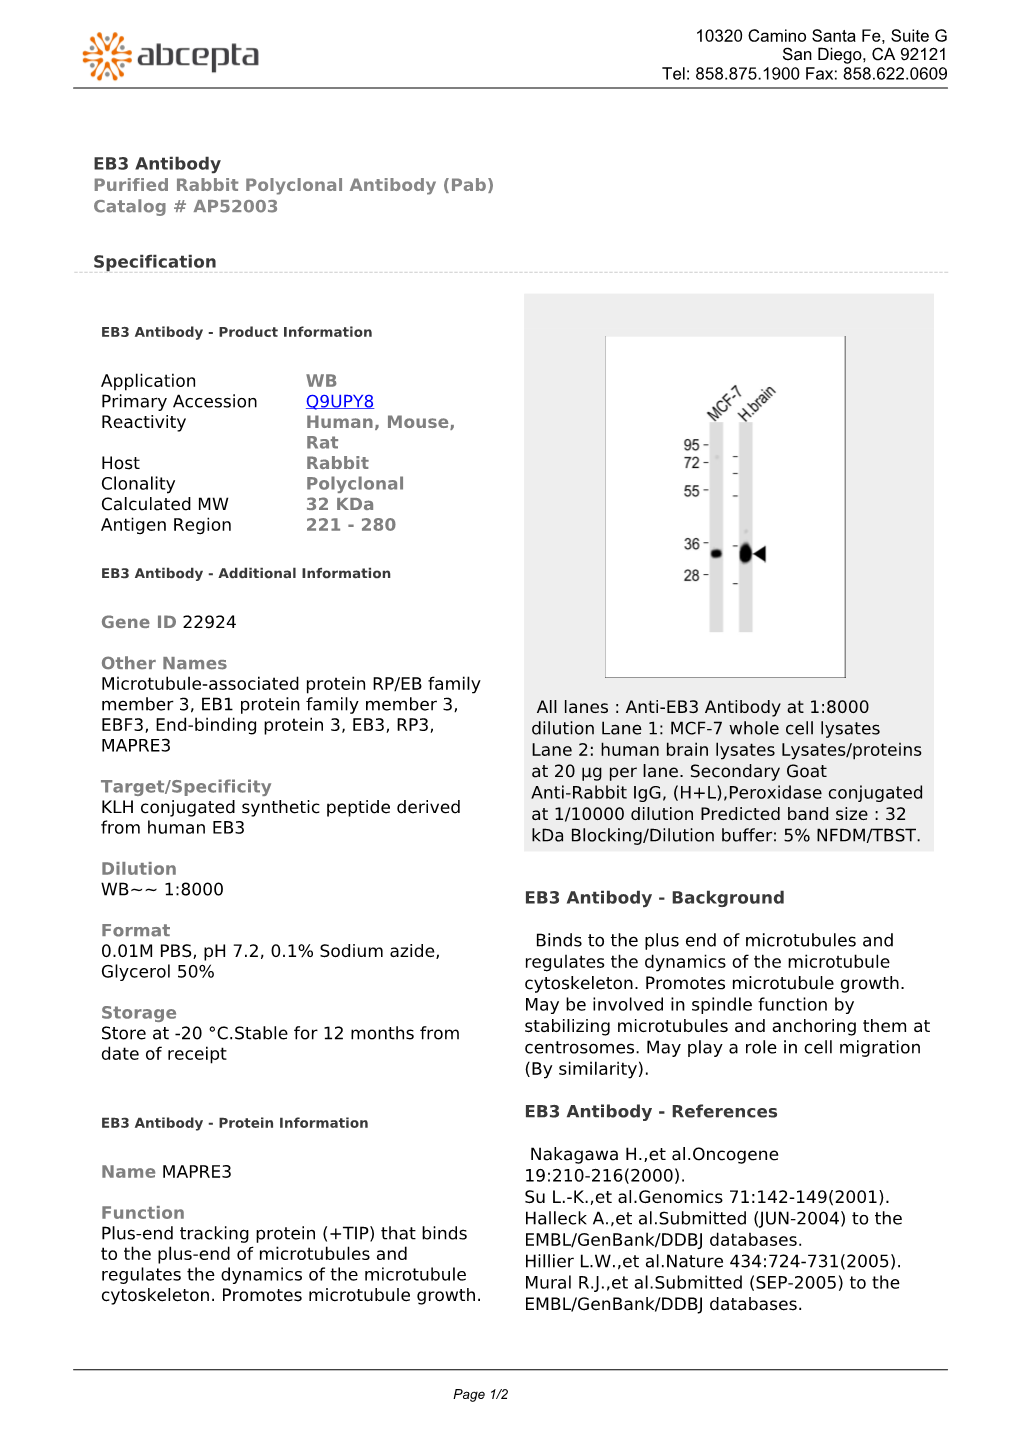 EB3 Antibody Purified Rabbit Polyclonal Antibody (Pab) Catalog # AP52003